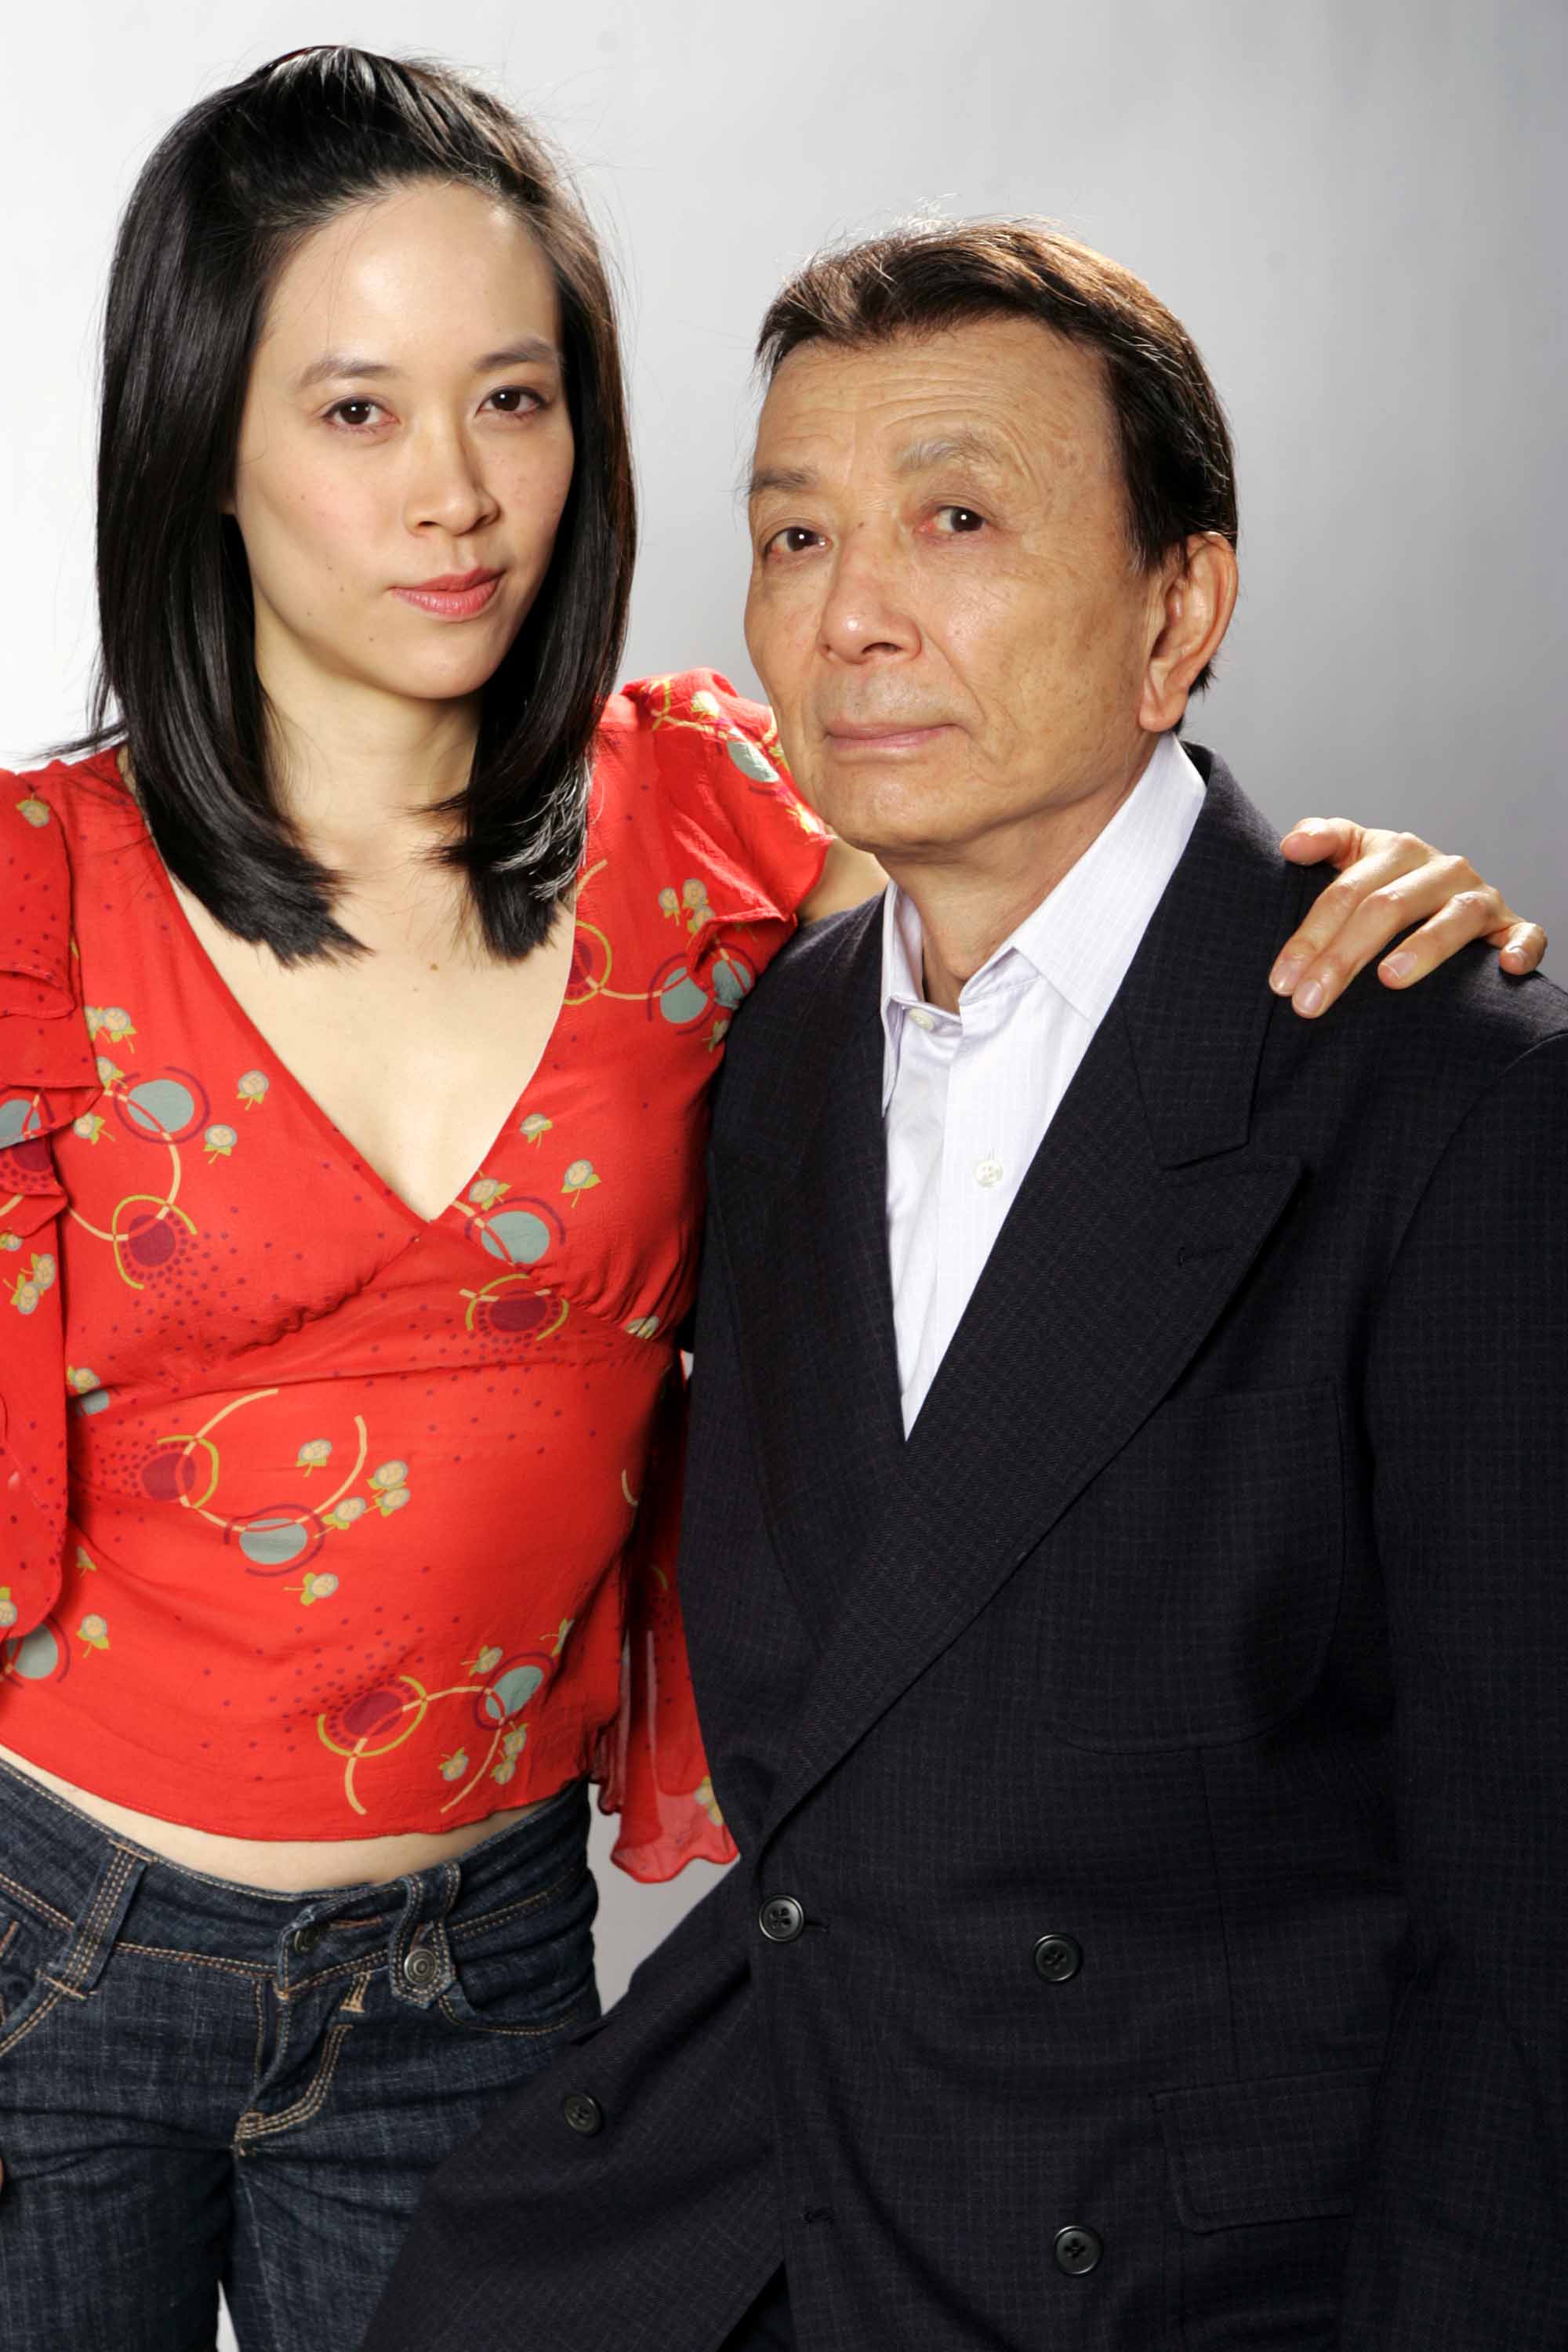 James Hong and April Hong